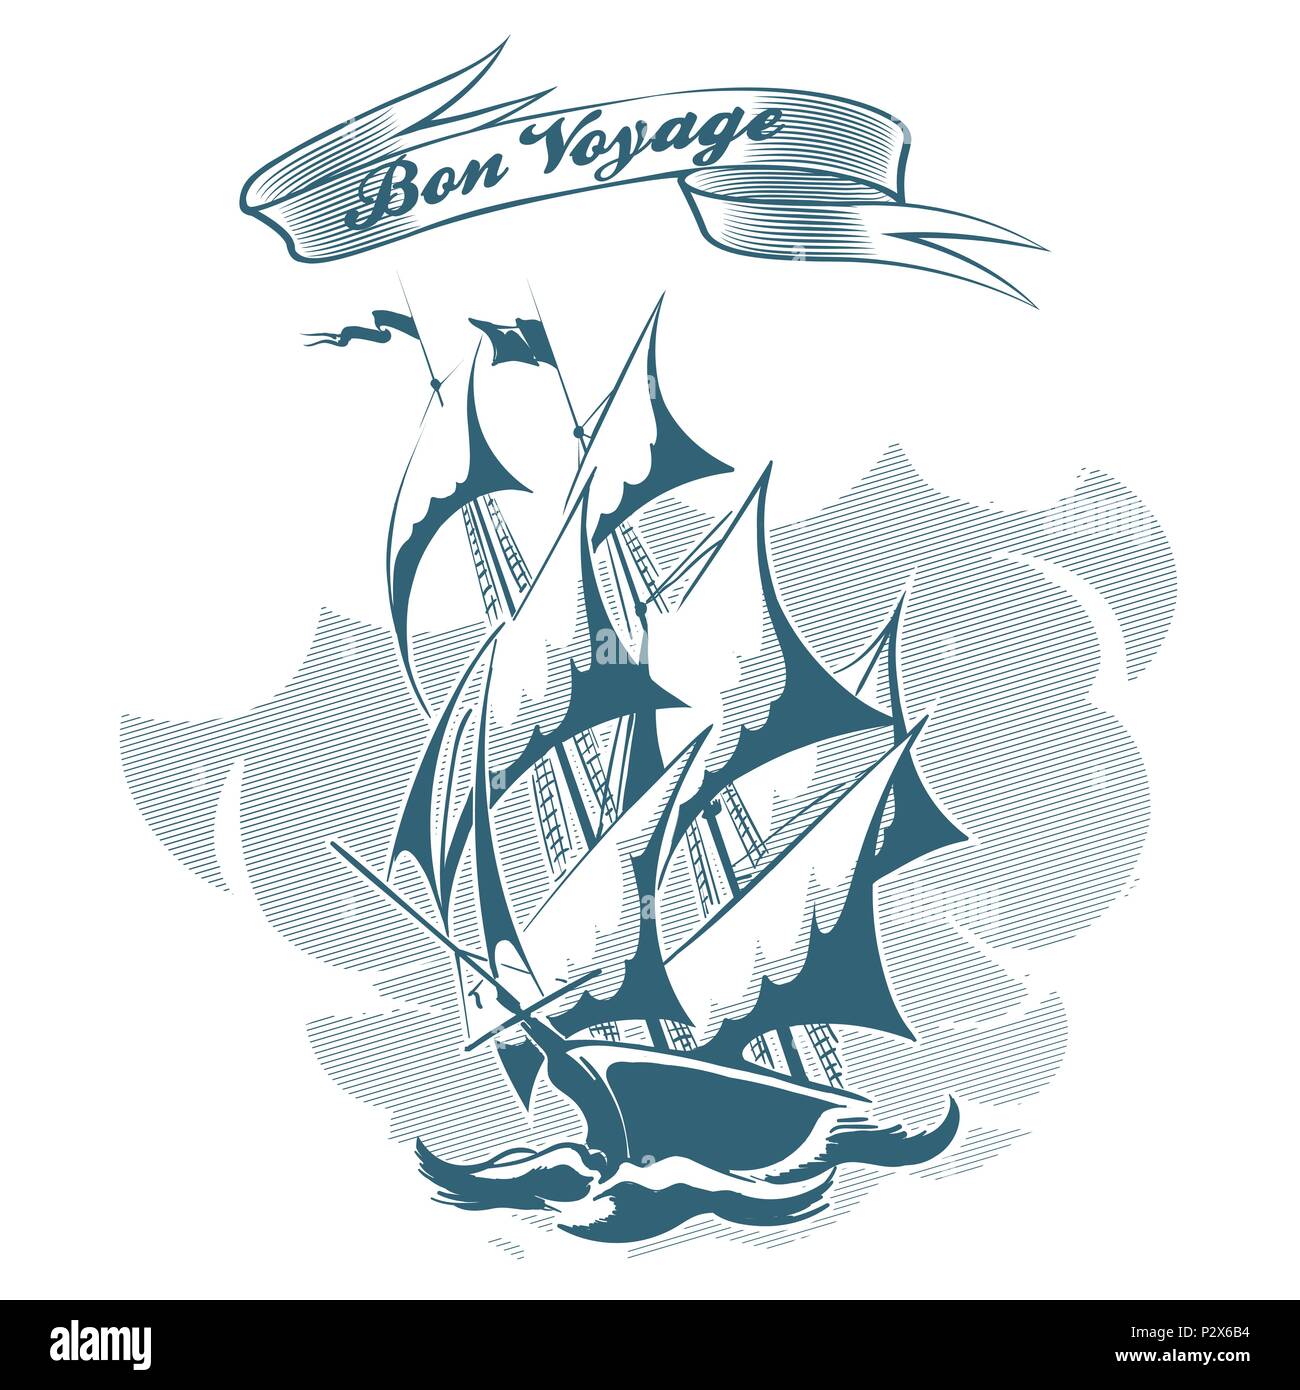 Segelschiff in Gravur Retro Stil und Band mit Bon Voyage Formulierung gezeichnet. Vector Illustration. Stock Vektor